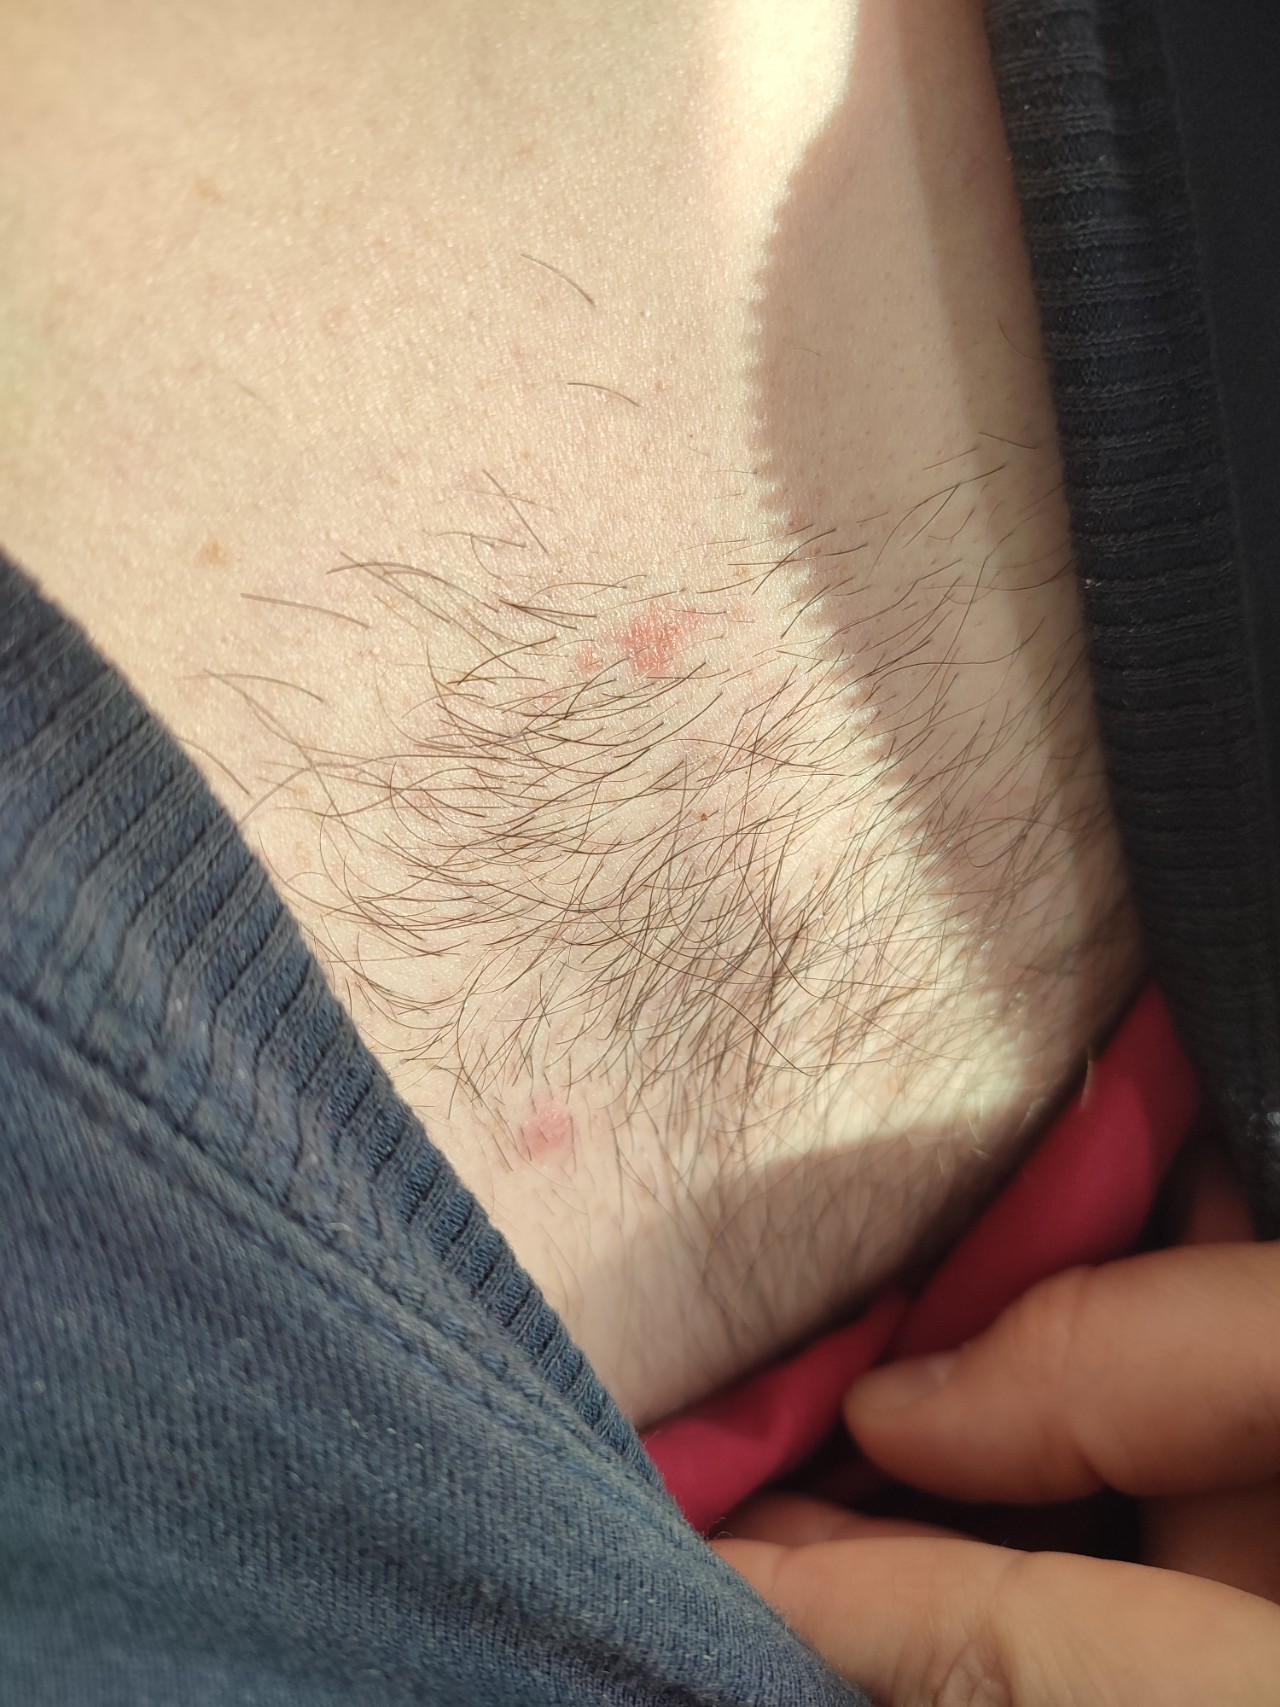 красная сыпь на груди во время беременности фото 39